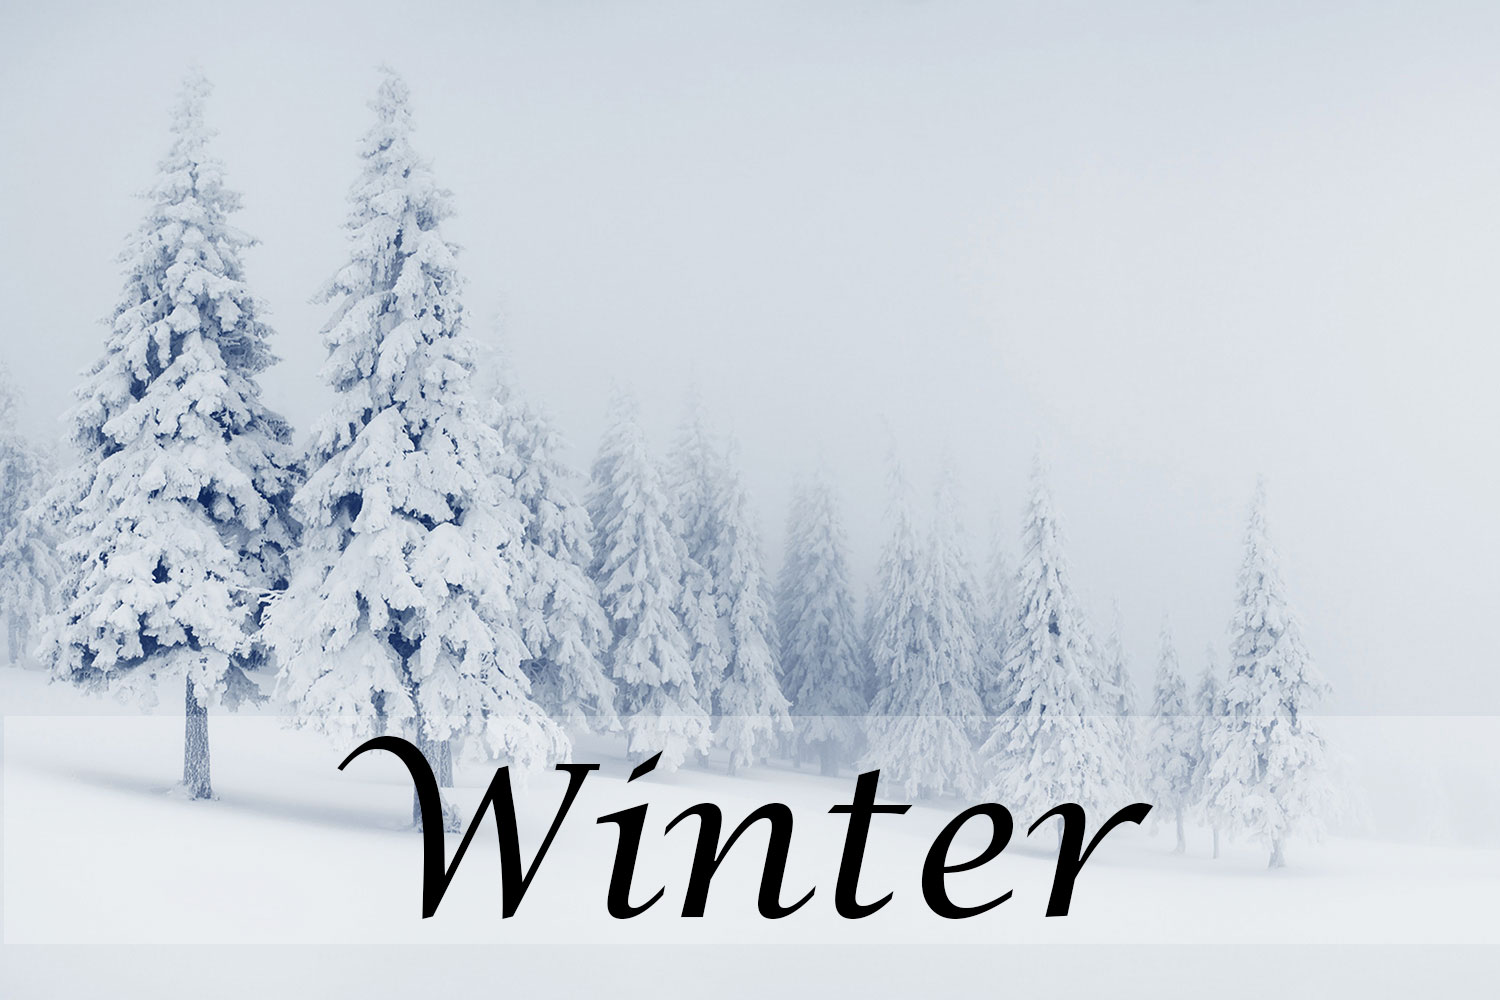 Winter - December Solstice